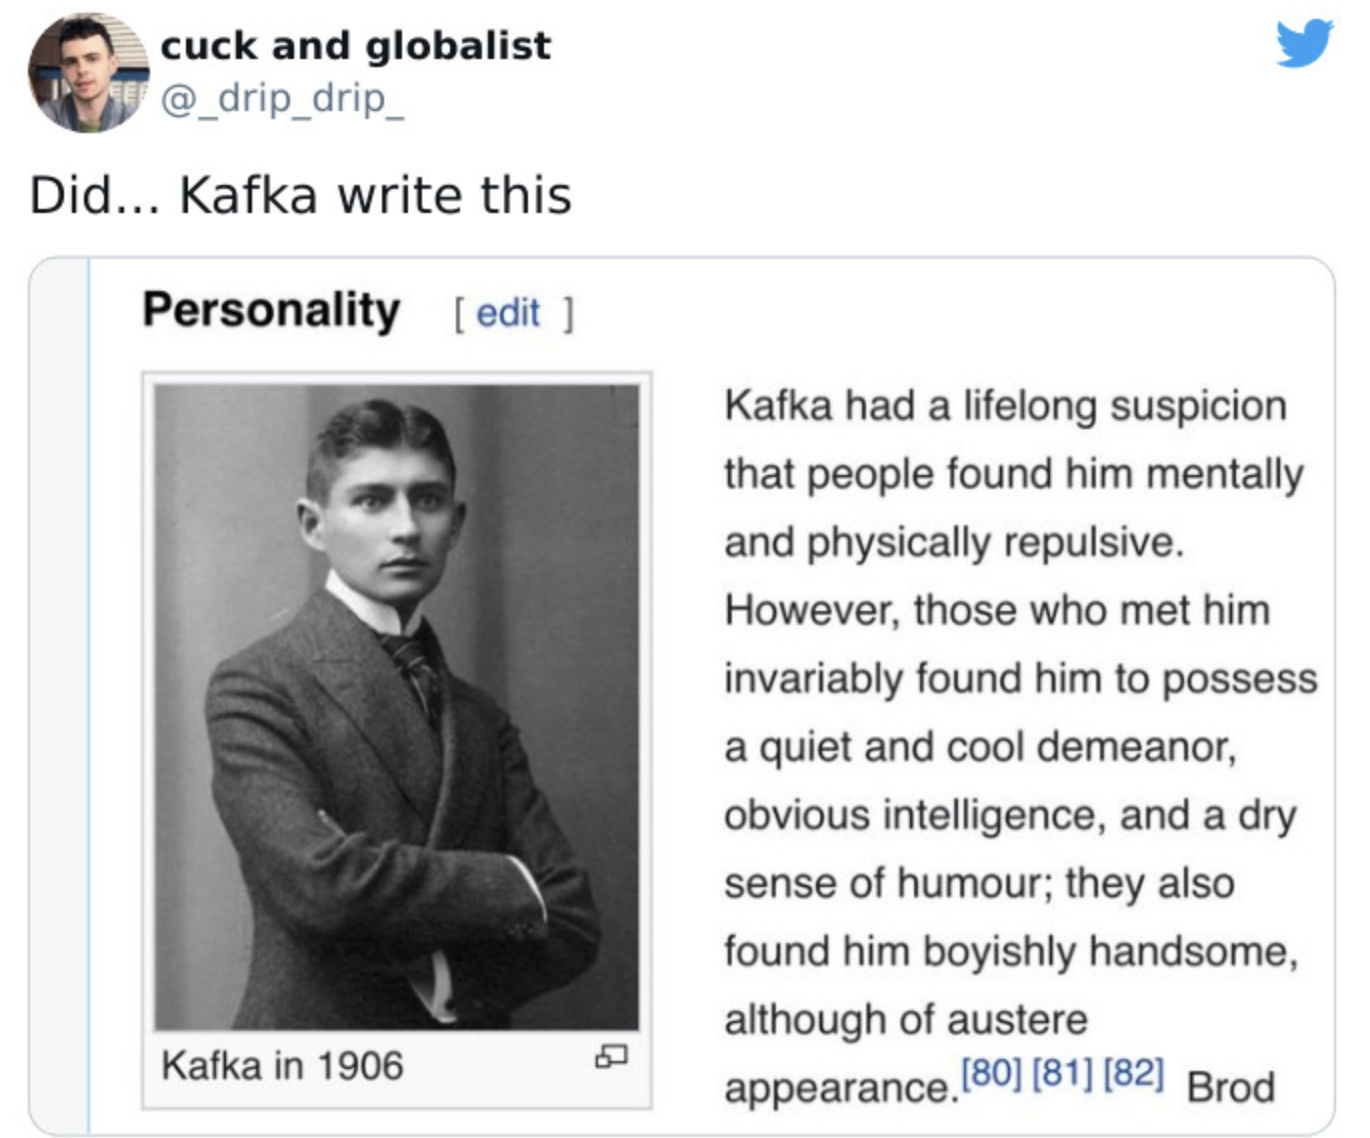 depths of wikipedia - kafka personality